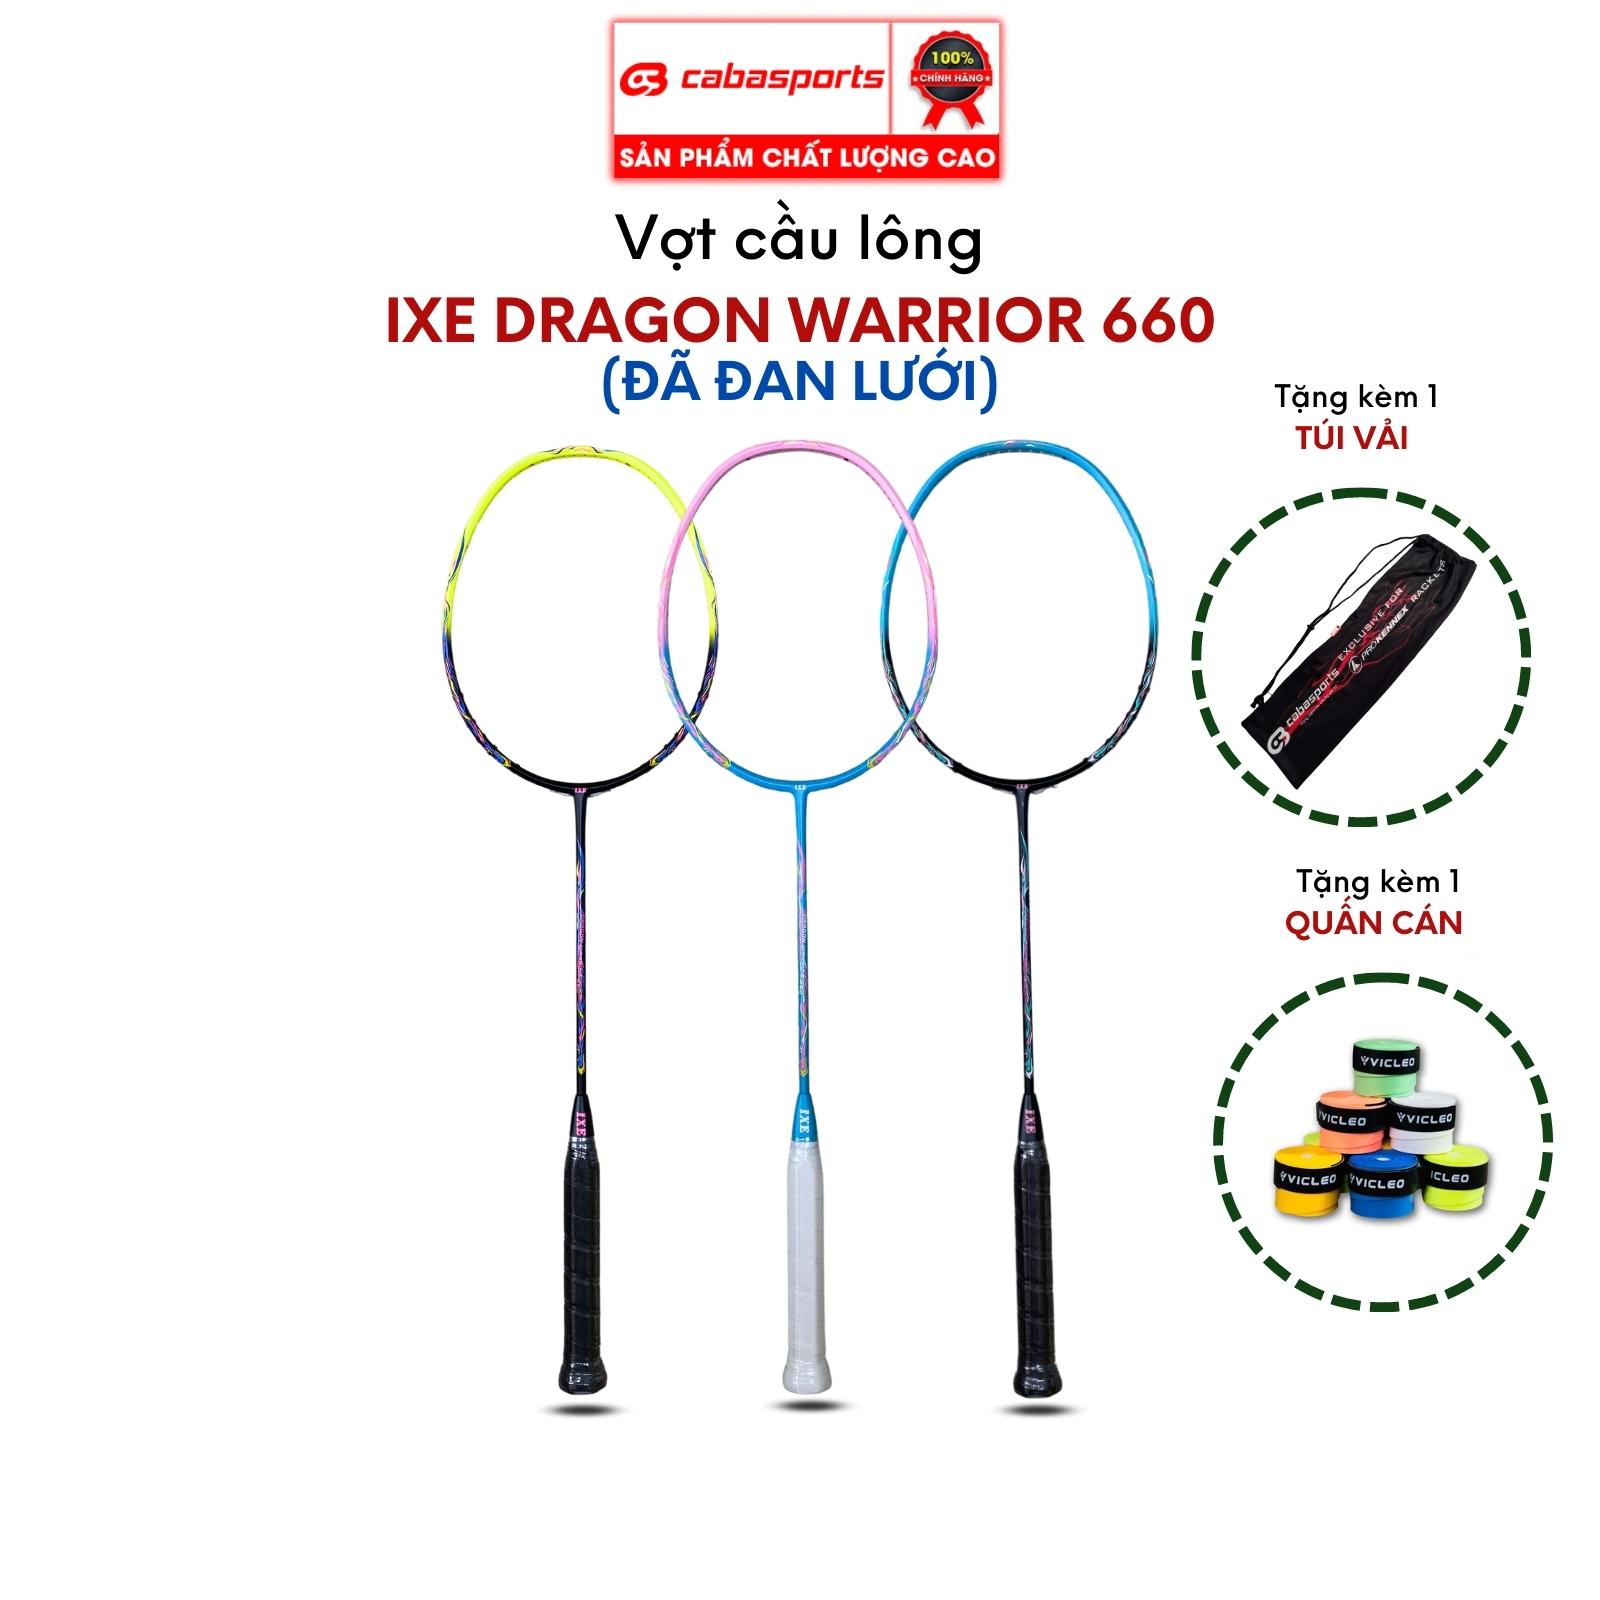 Vợt cầu lông đơn đã đan lưới IXE Dragon Warrior 660 siêu nhẹ giá rẻ, vợt cầu lông carbon chất lượng Bảo hành 3 tháng